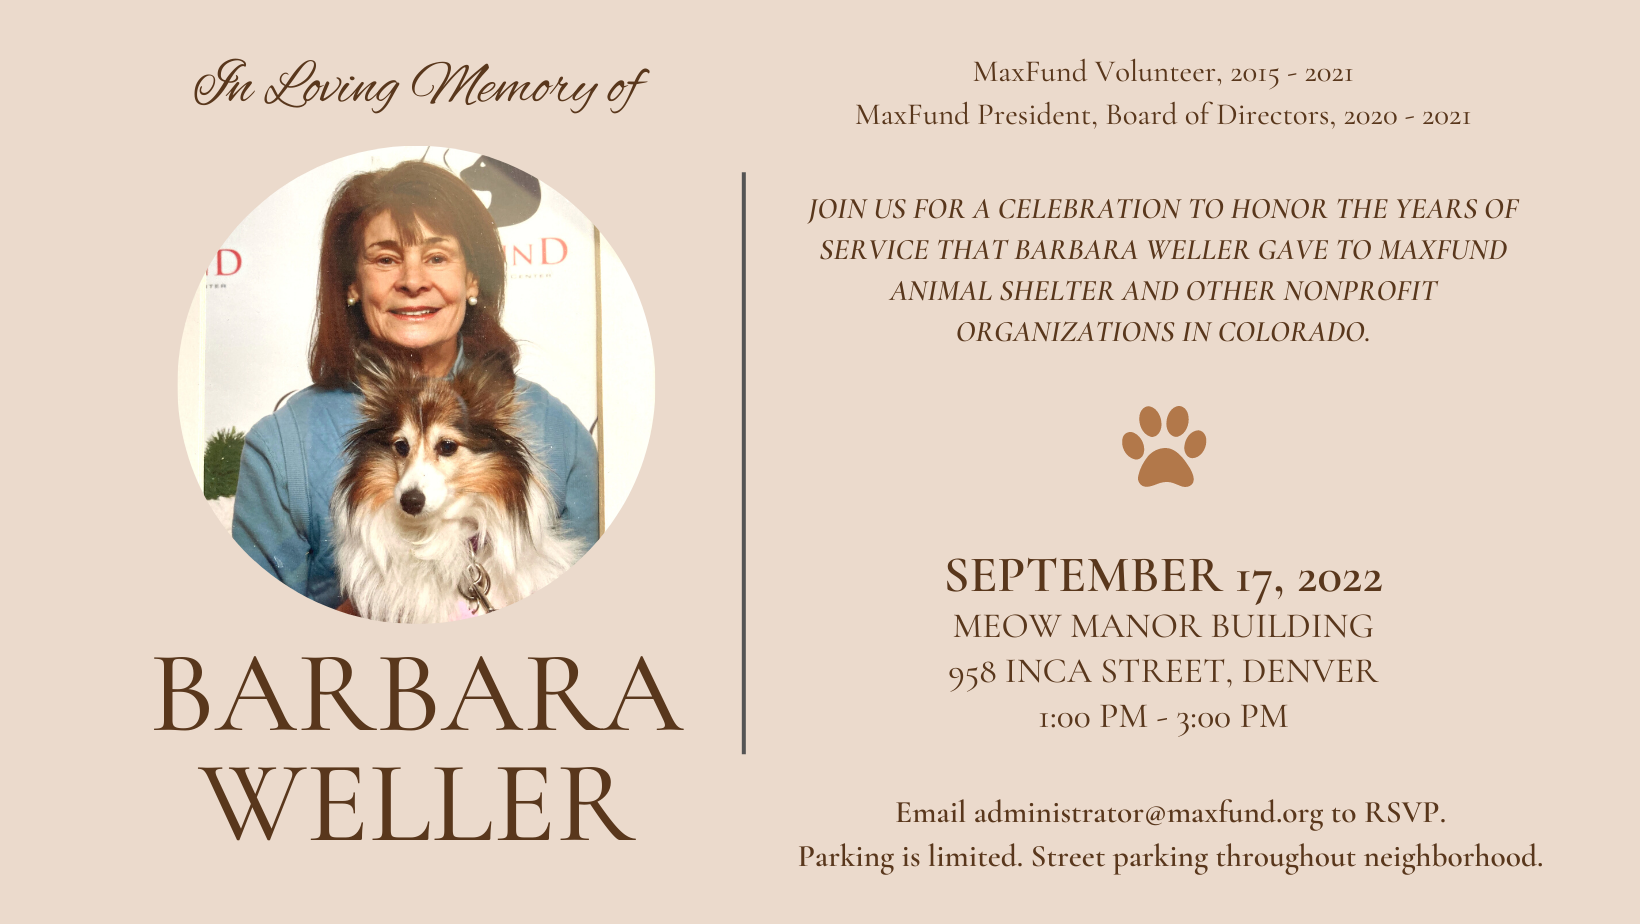 
Celebration of Service for Barbara Weller